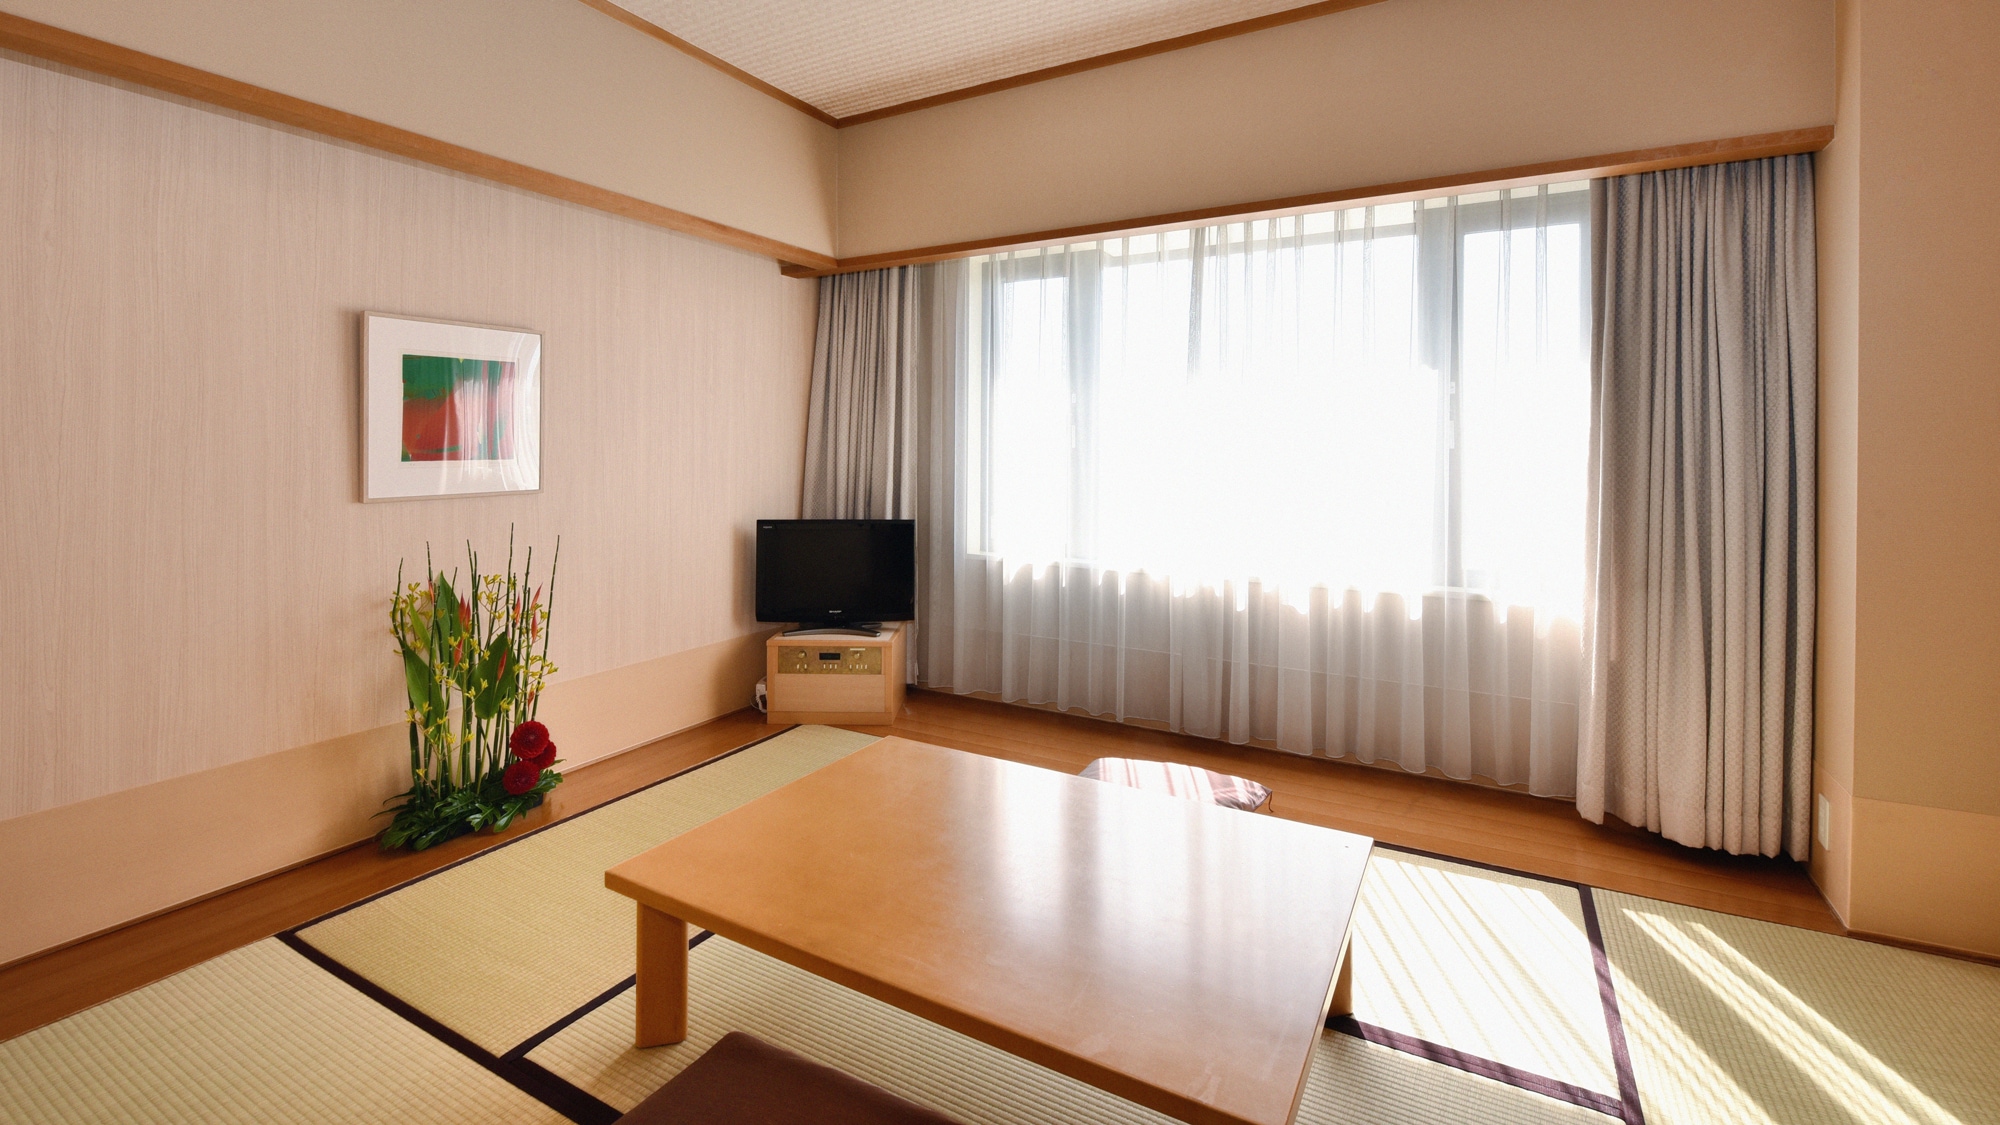 Kamar bergaya Jepang (Kamar Jepang) << 6 tikar tatami / 24 meter persegi >>